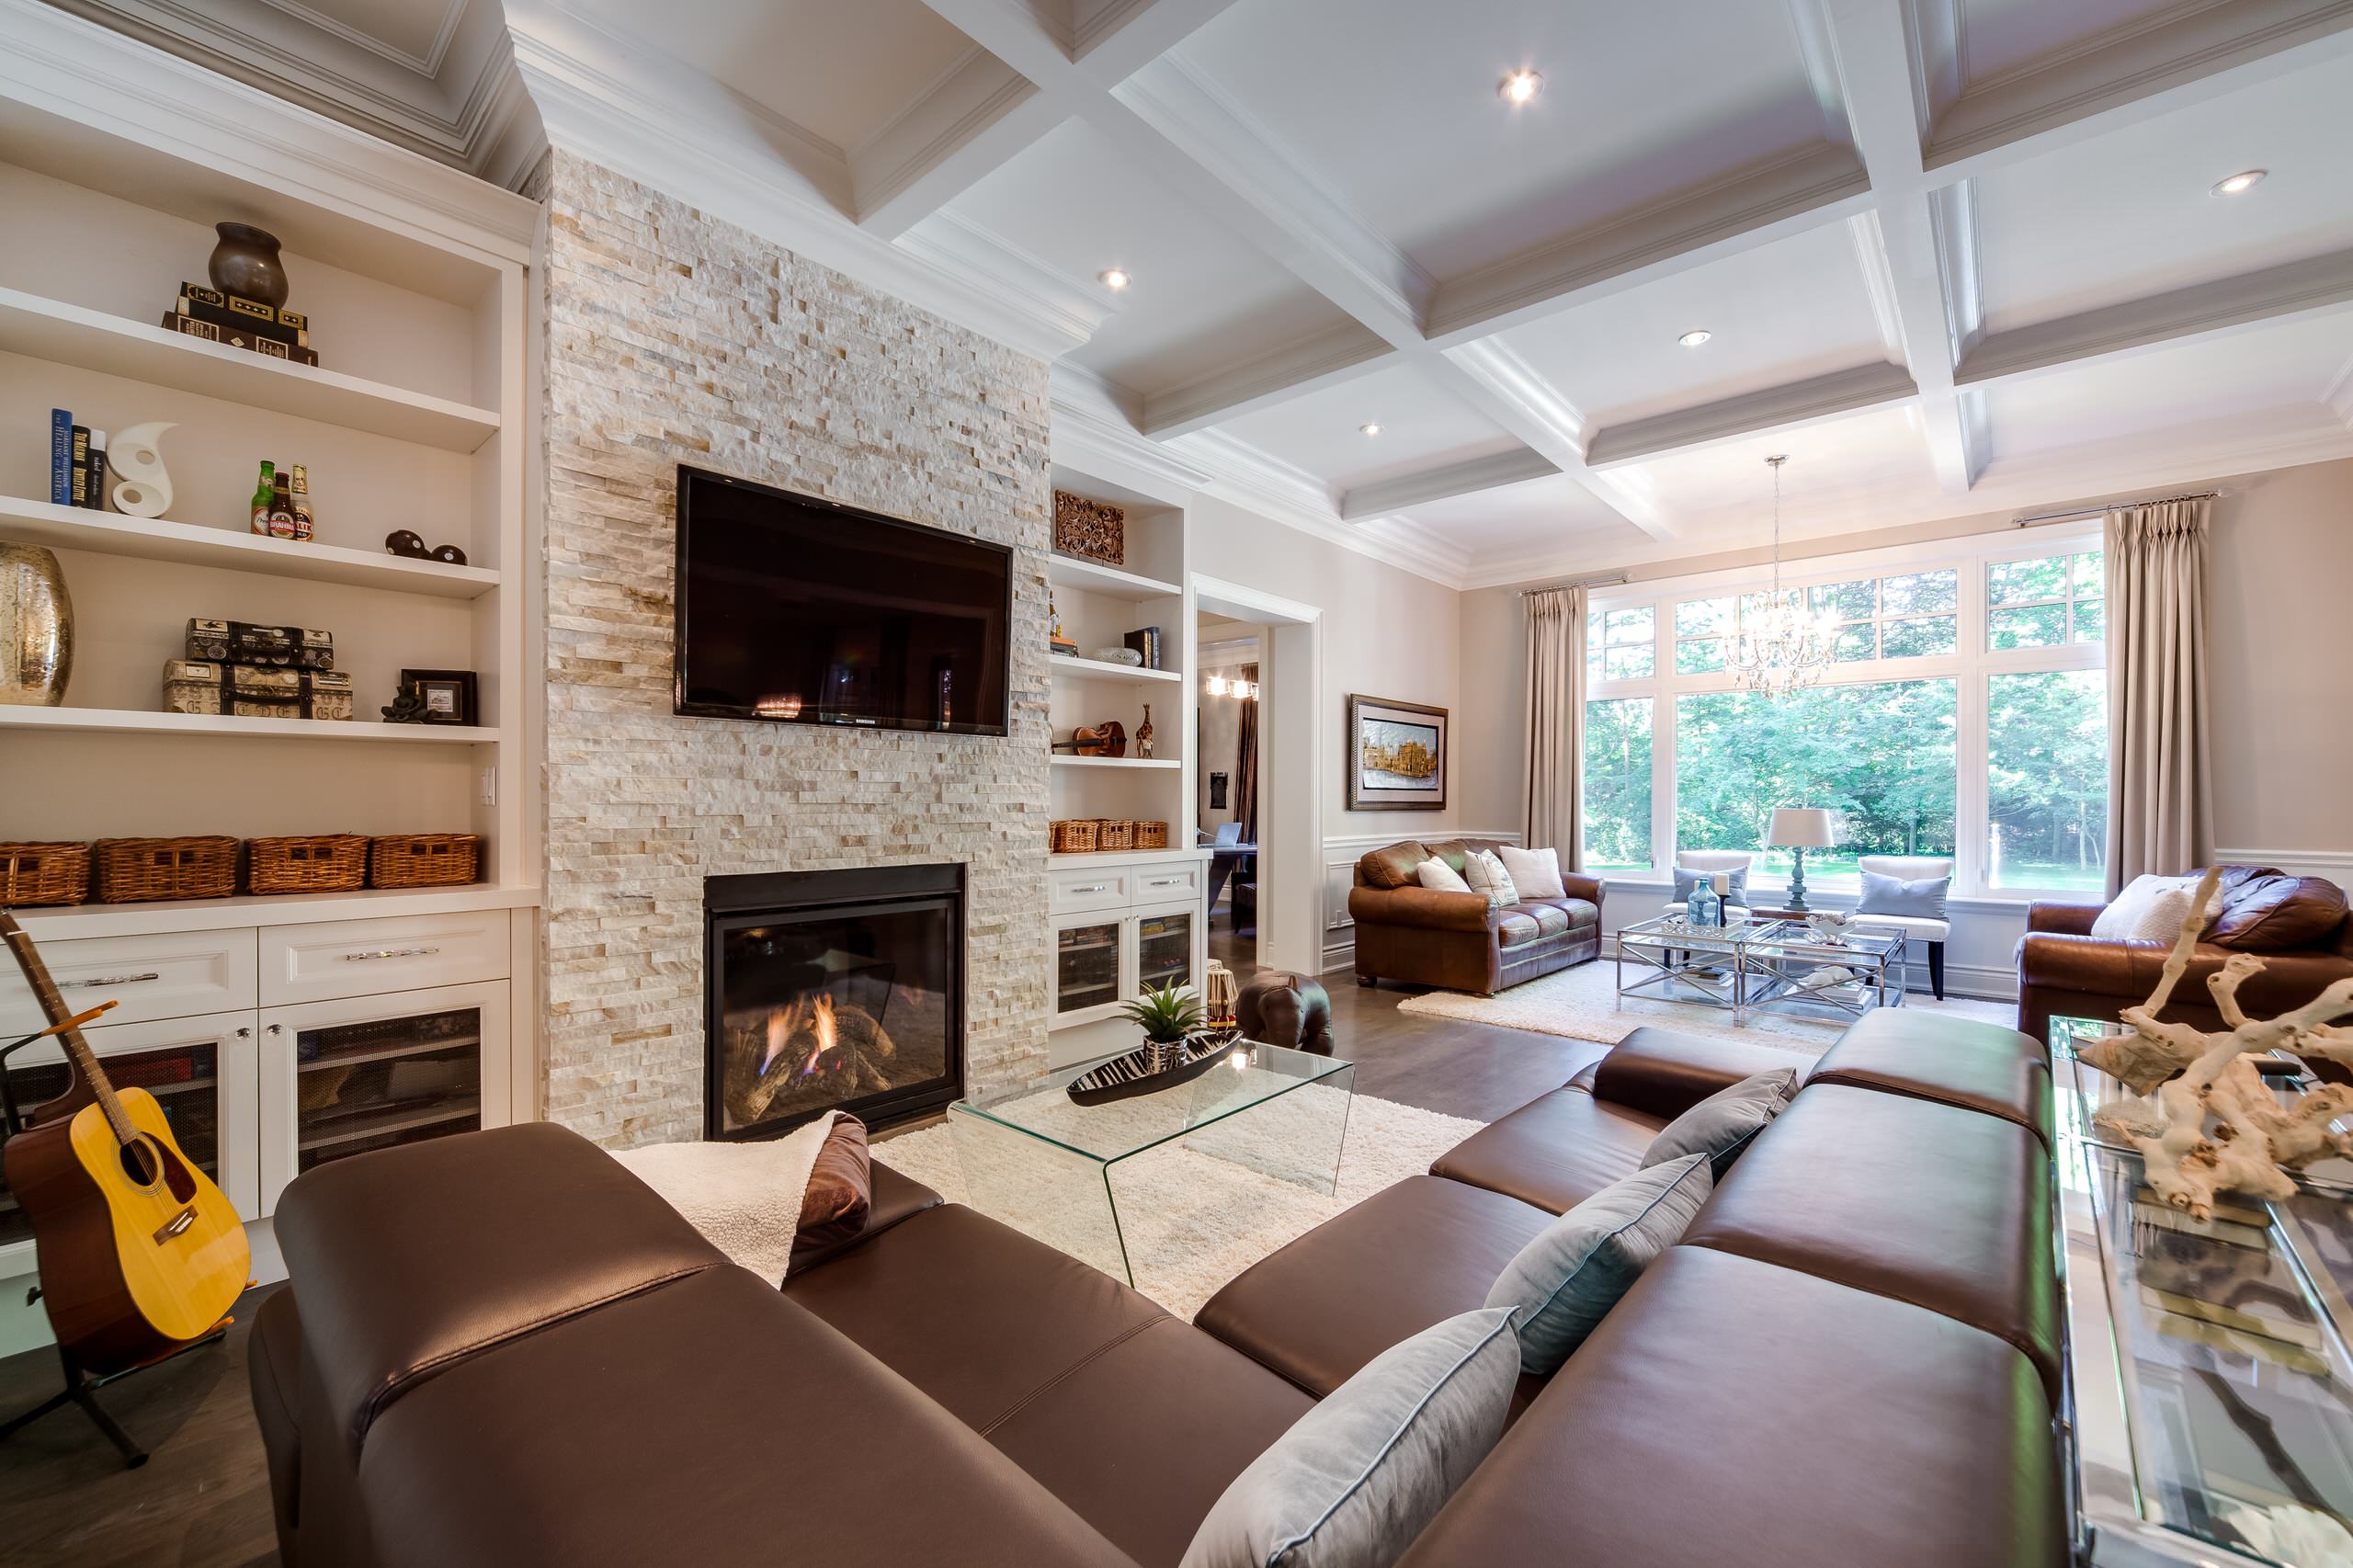 Дизайн интерьера гостиной фото: Потолок в гостиной – 135 лучших фото идей для квартиры и дома